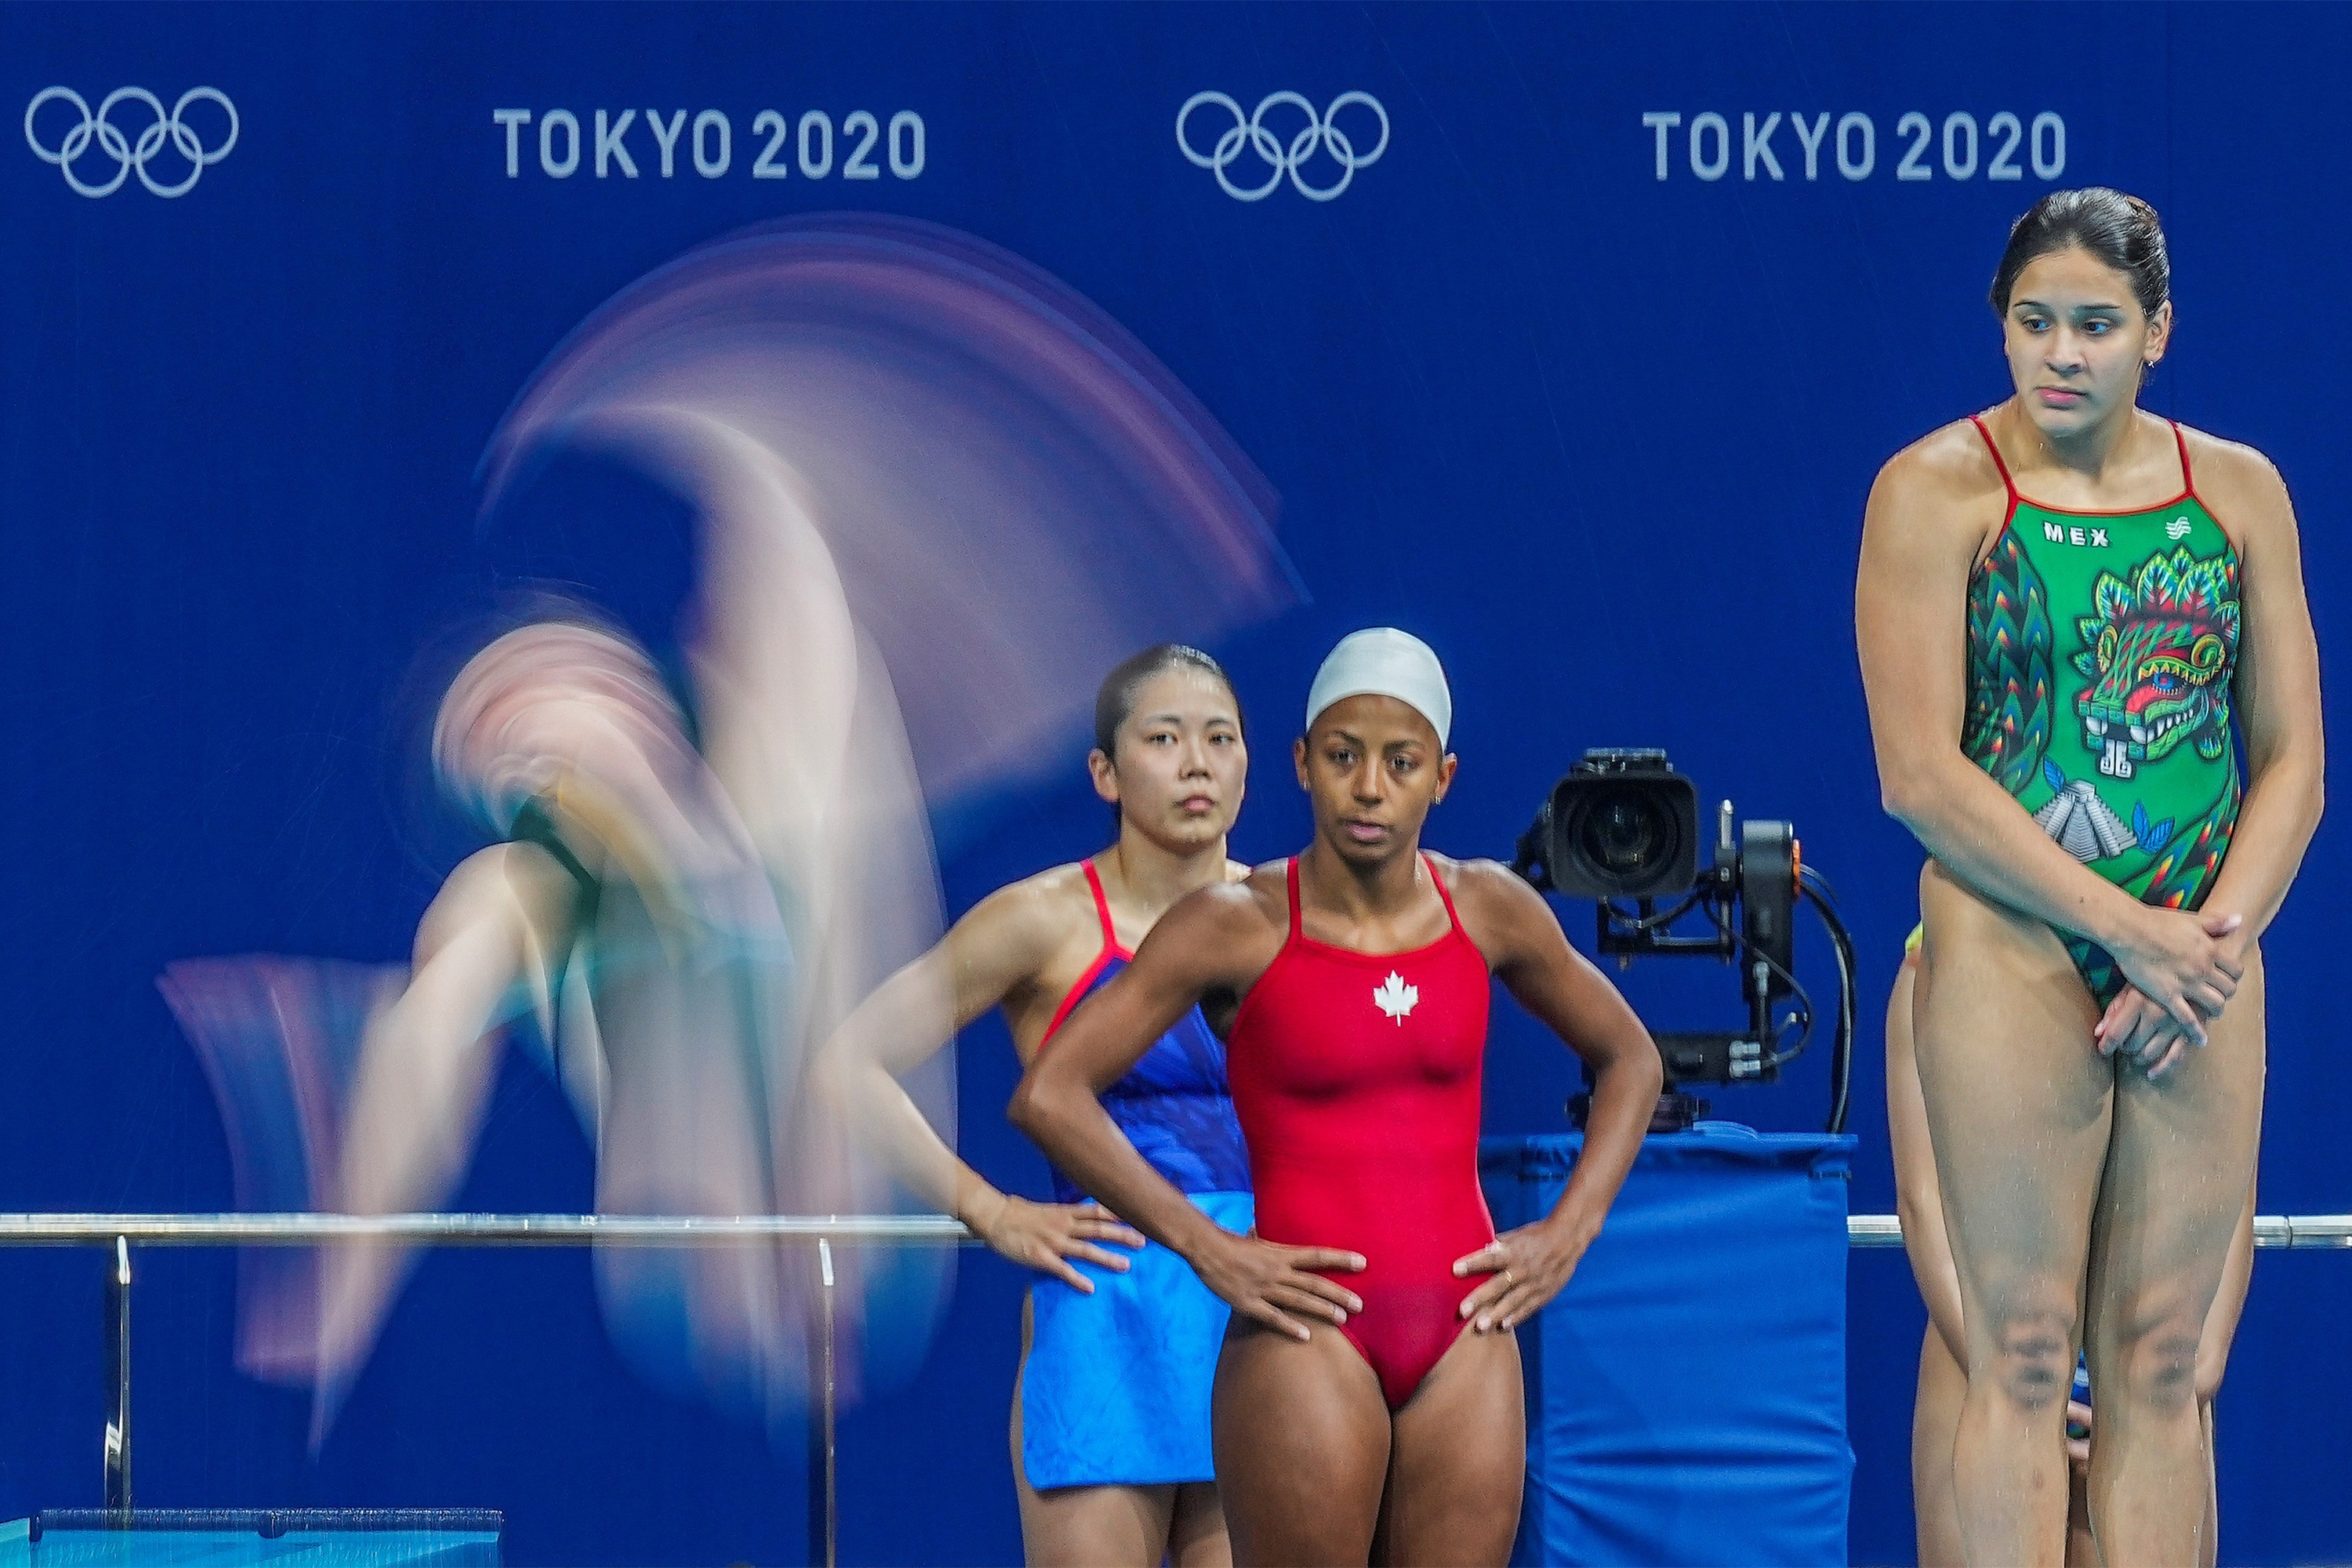 Fotos: As Olimpíadas em baixa velocidade